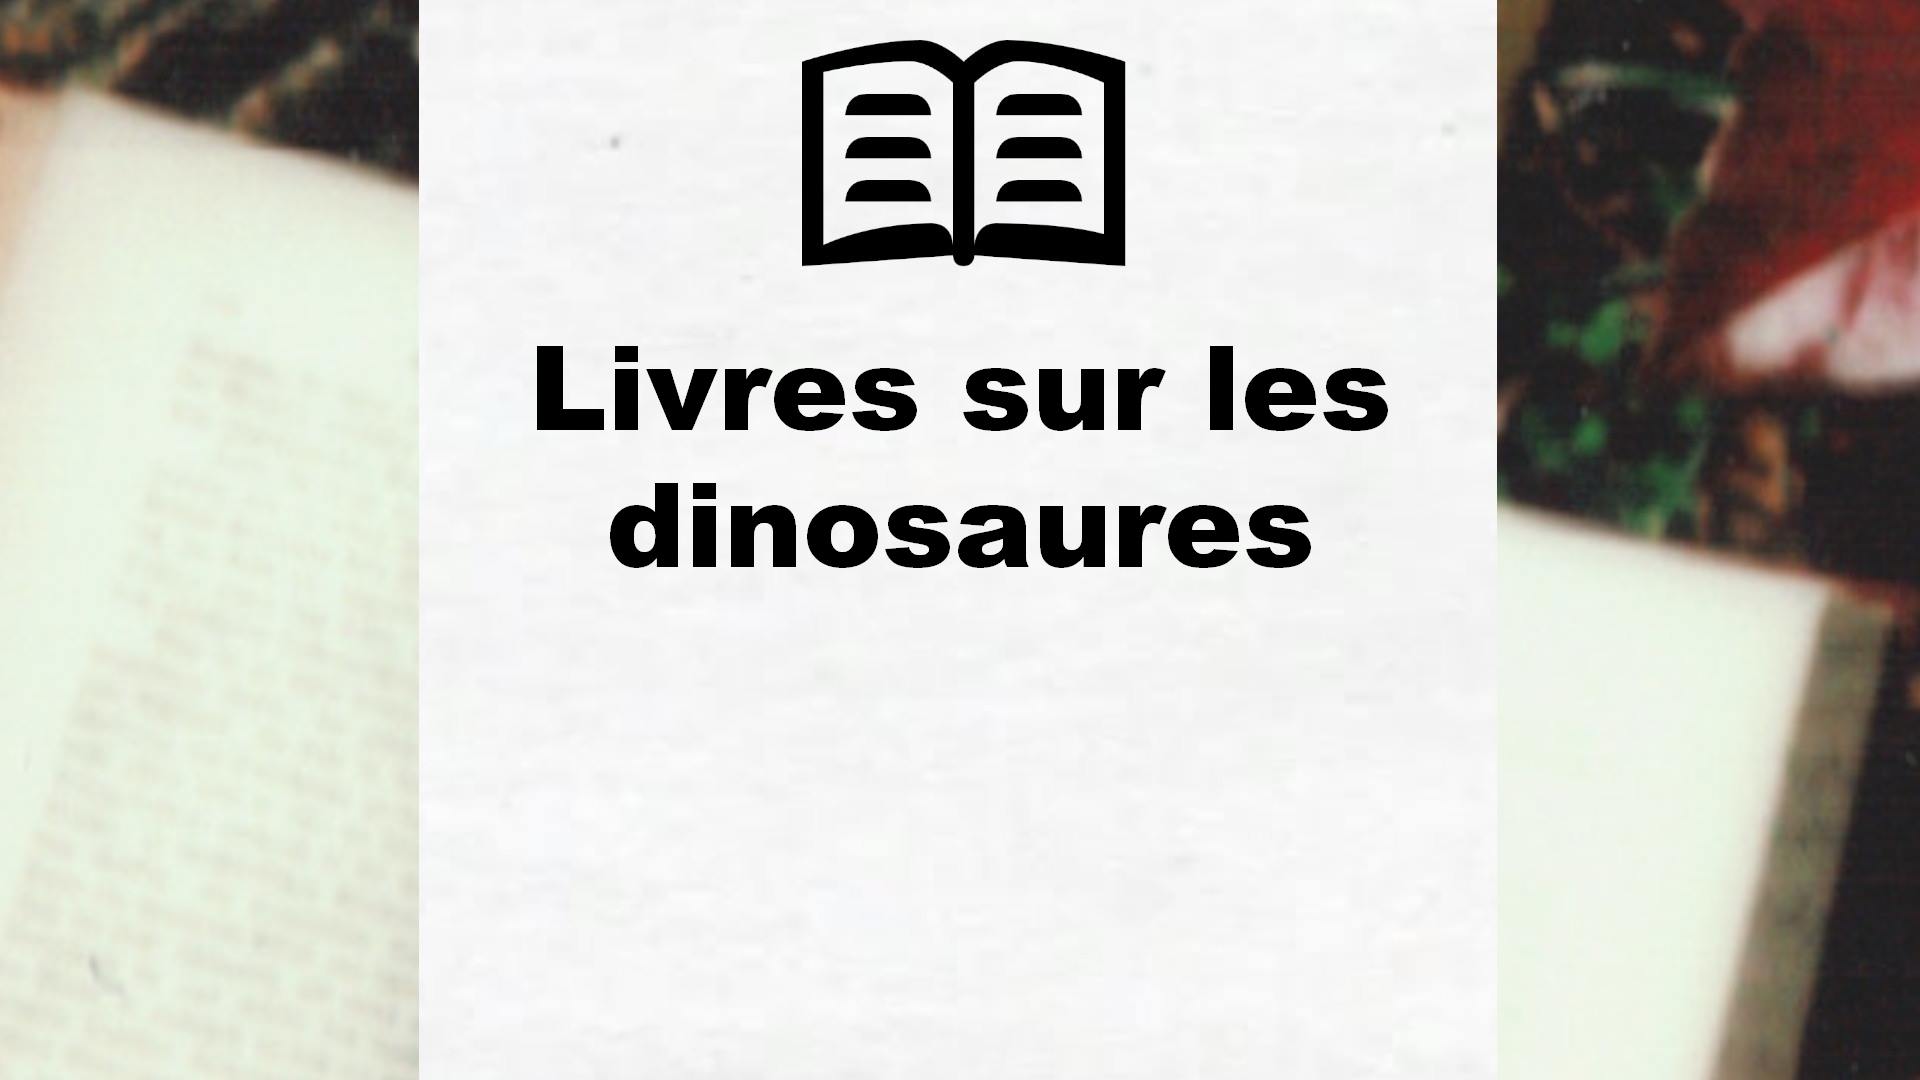 Livres sur les dinosaures